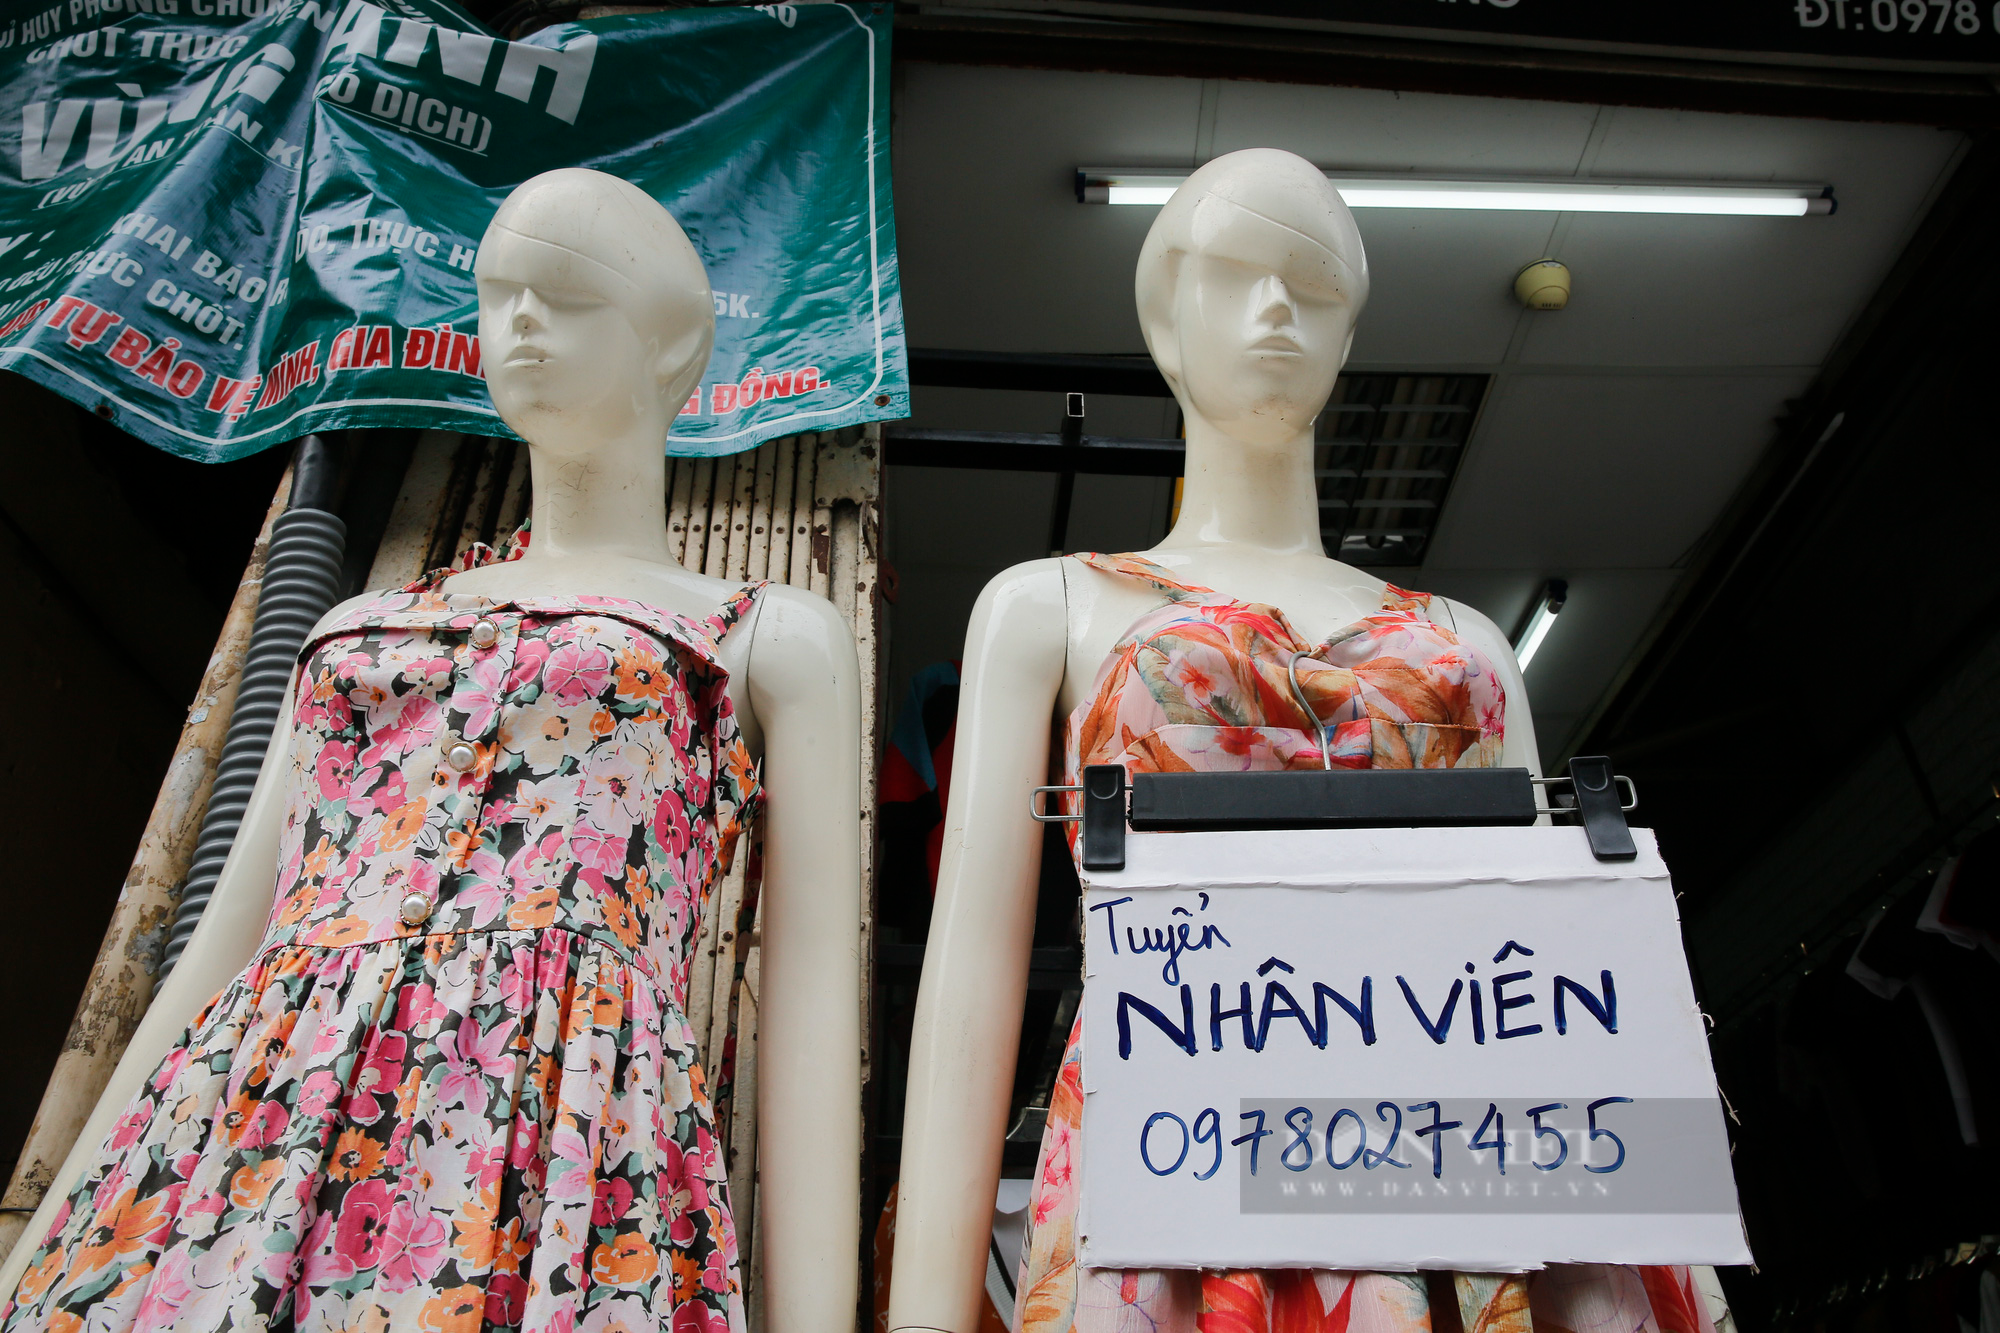 Giá thuê giảm 50%, chủ nhà vẫn bị “bùng” tiền tại phố buôn bán sầm uất nhất Hà Nội - Ảnh 10.